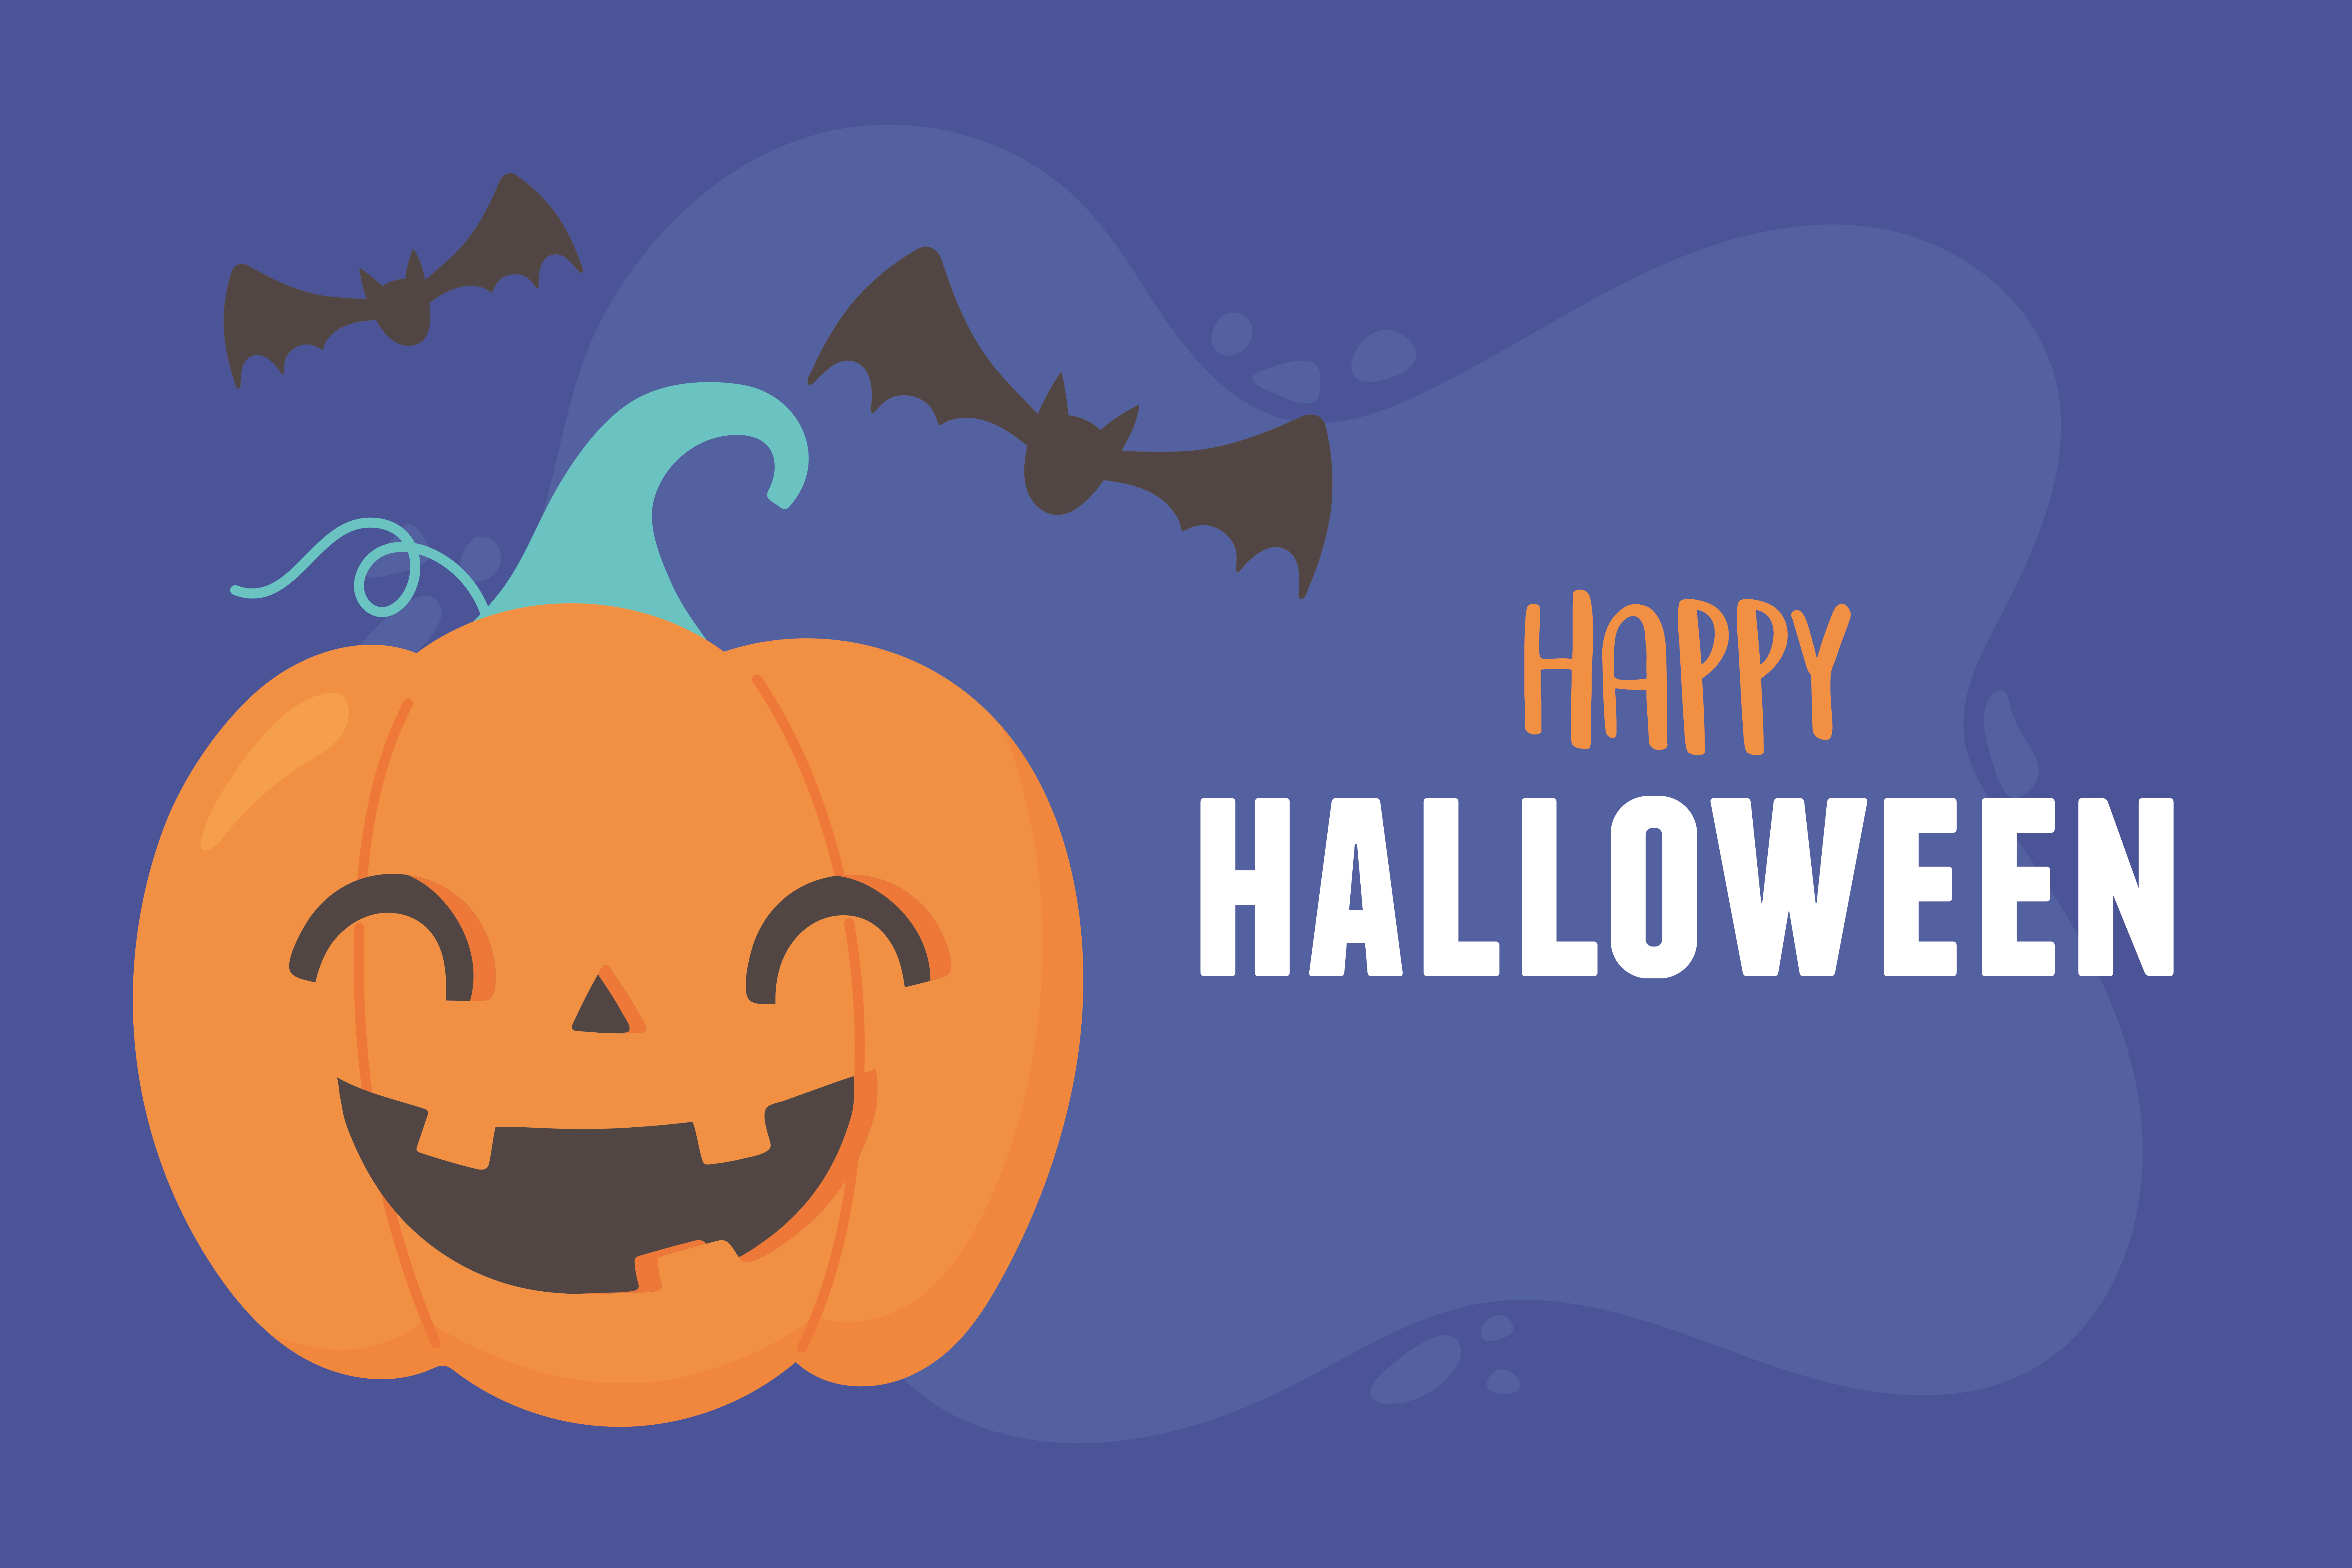 Feliz Halloween Com Texto De Venda Feliz Abóbora Cara-coroa Bruxa Que  Morcegos Voando Isolados Em Png Ou Fundo Transparente Ilustração do Vetor -  Ilustração de afastamento, cartaz: 230151450